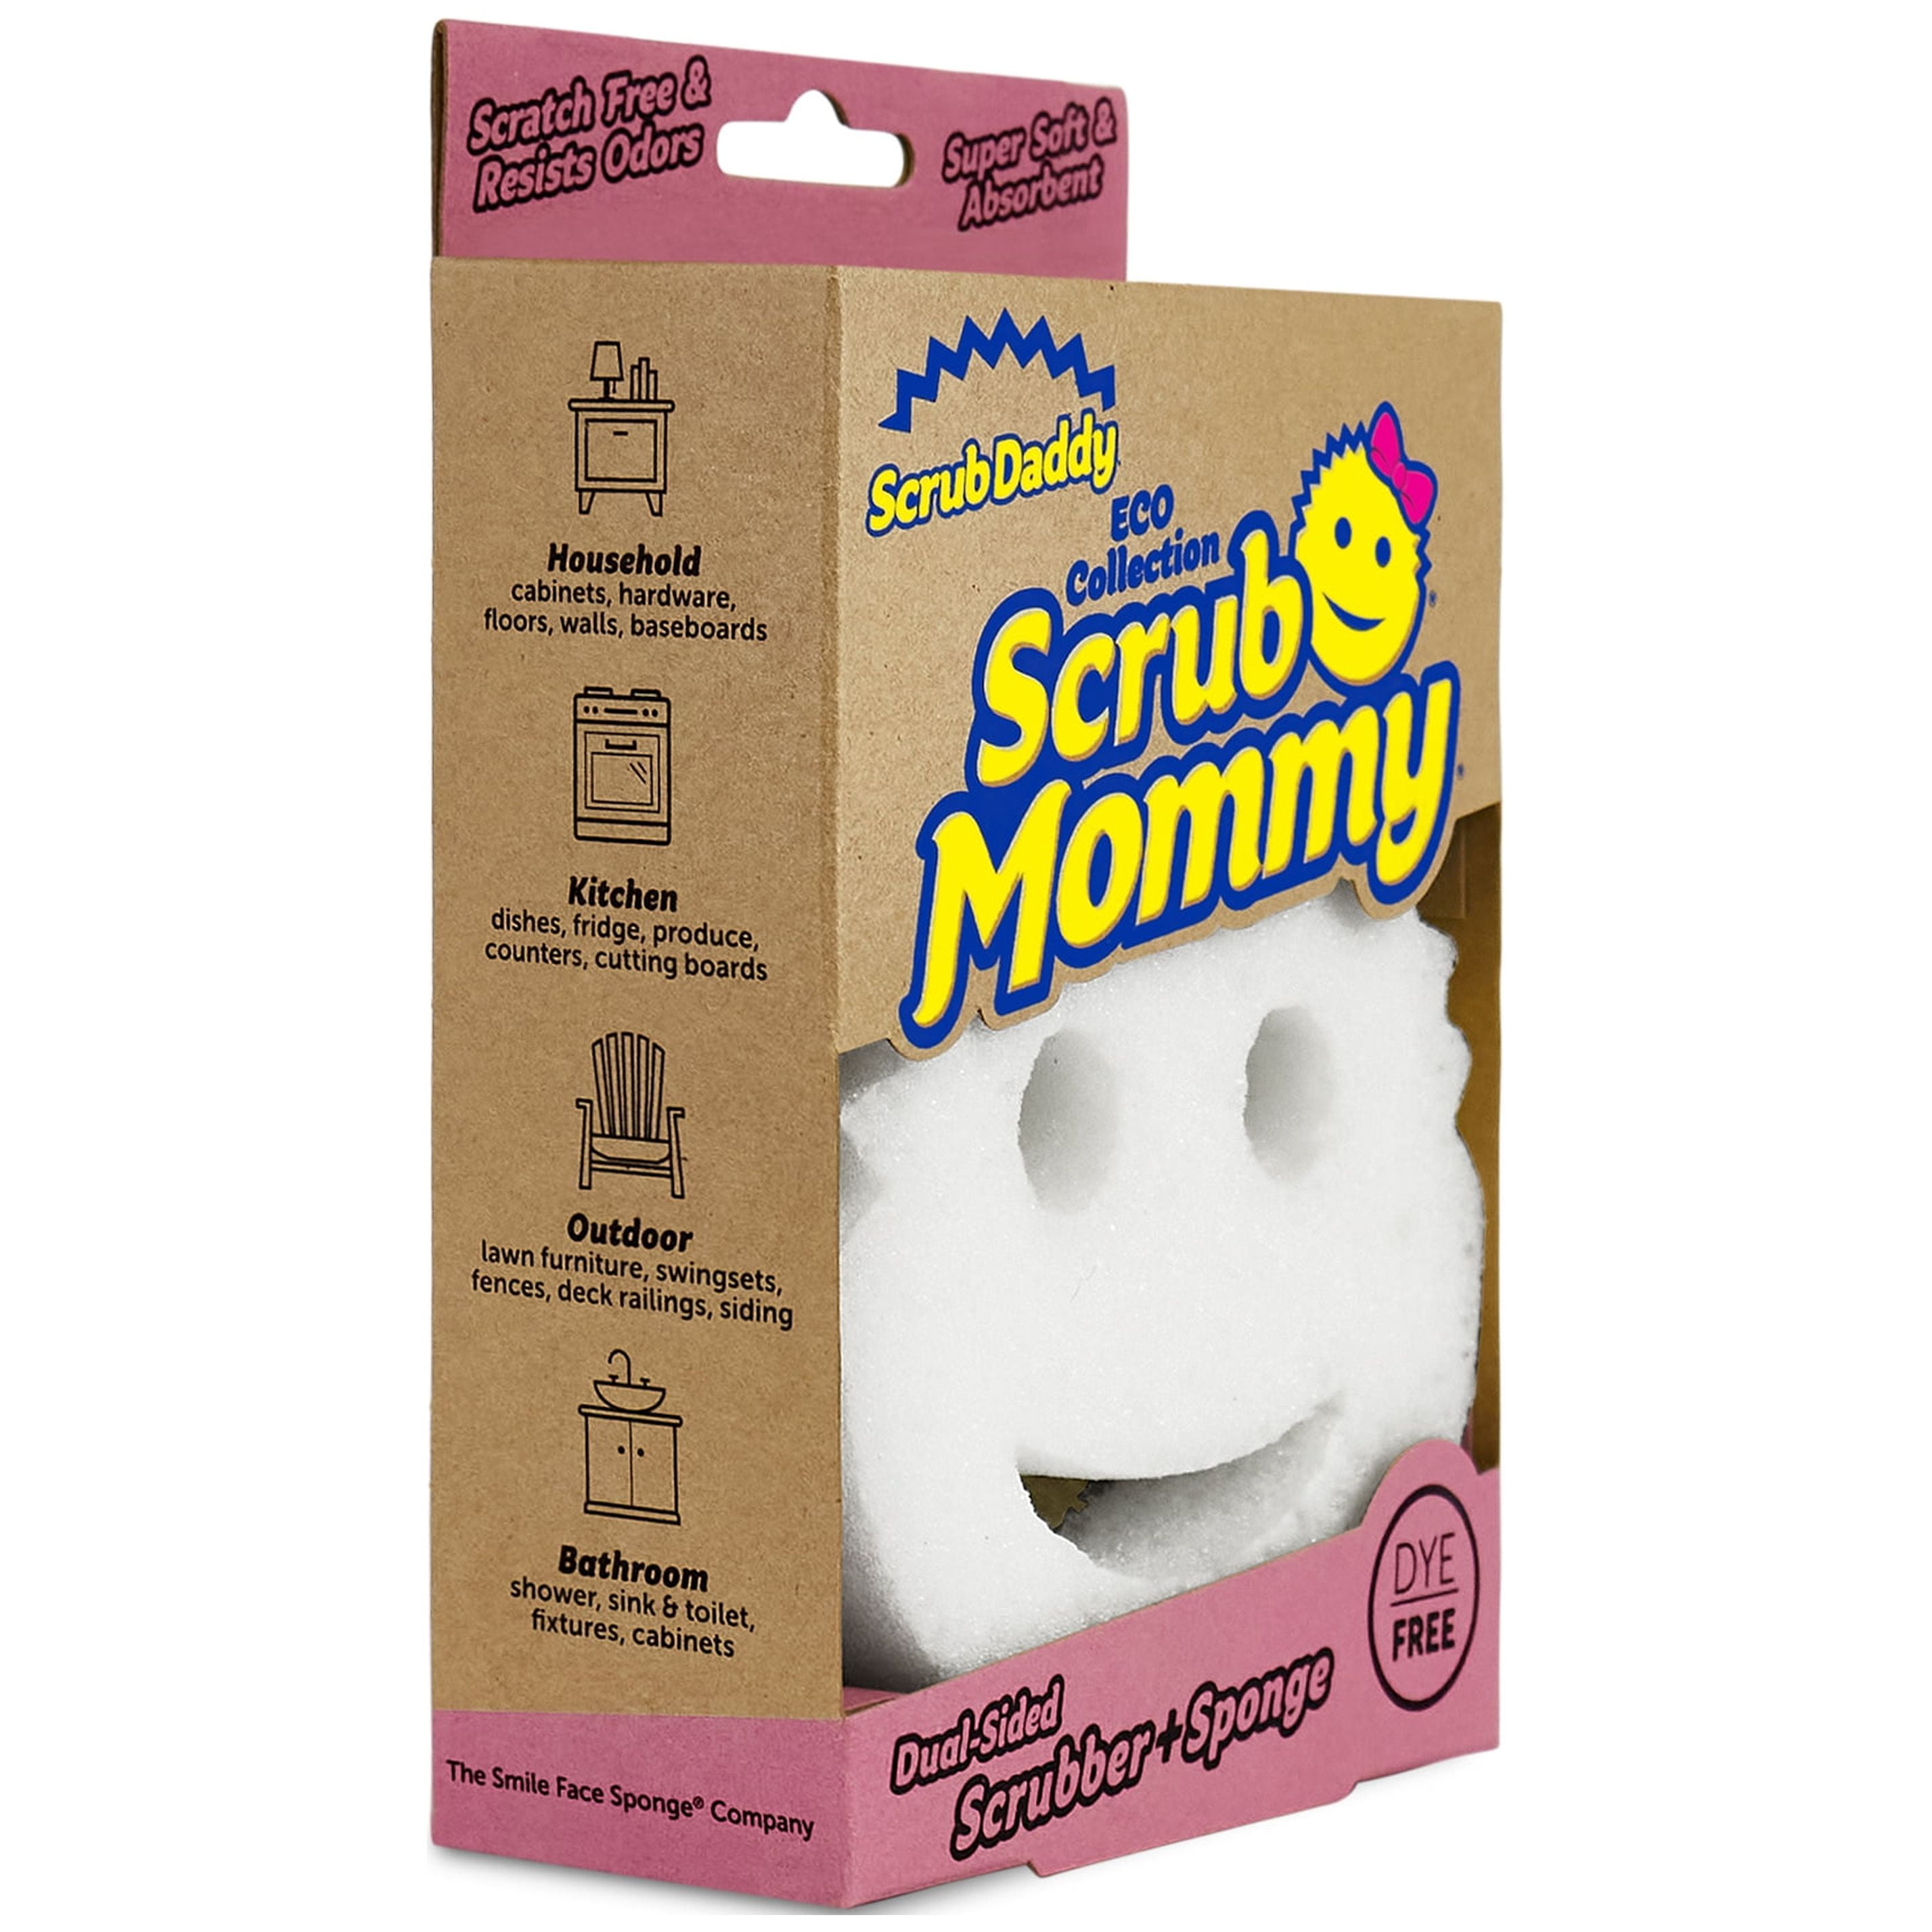 Scrub Daddy Powerase Gel + Scrub Mommy Scrubber Sponge - 1 Count